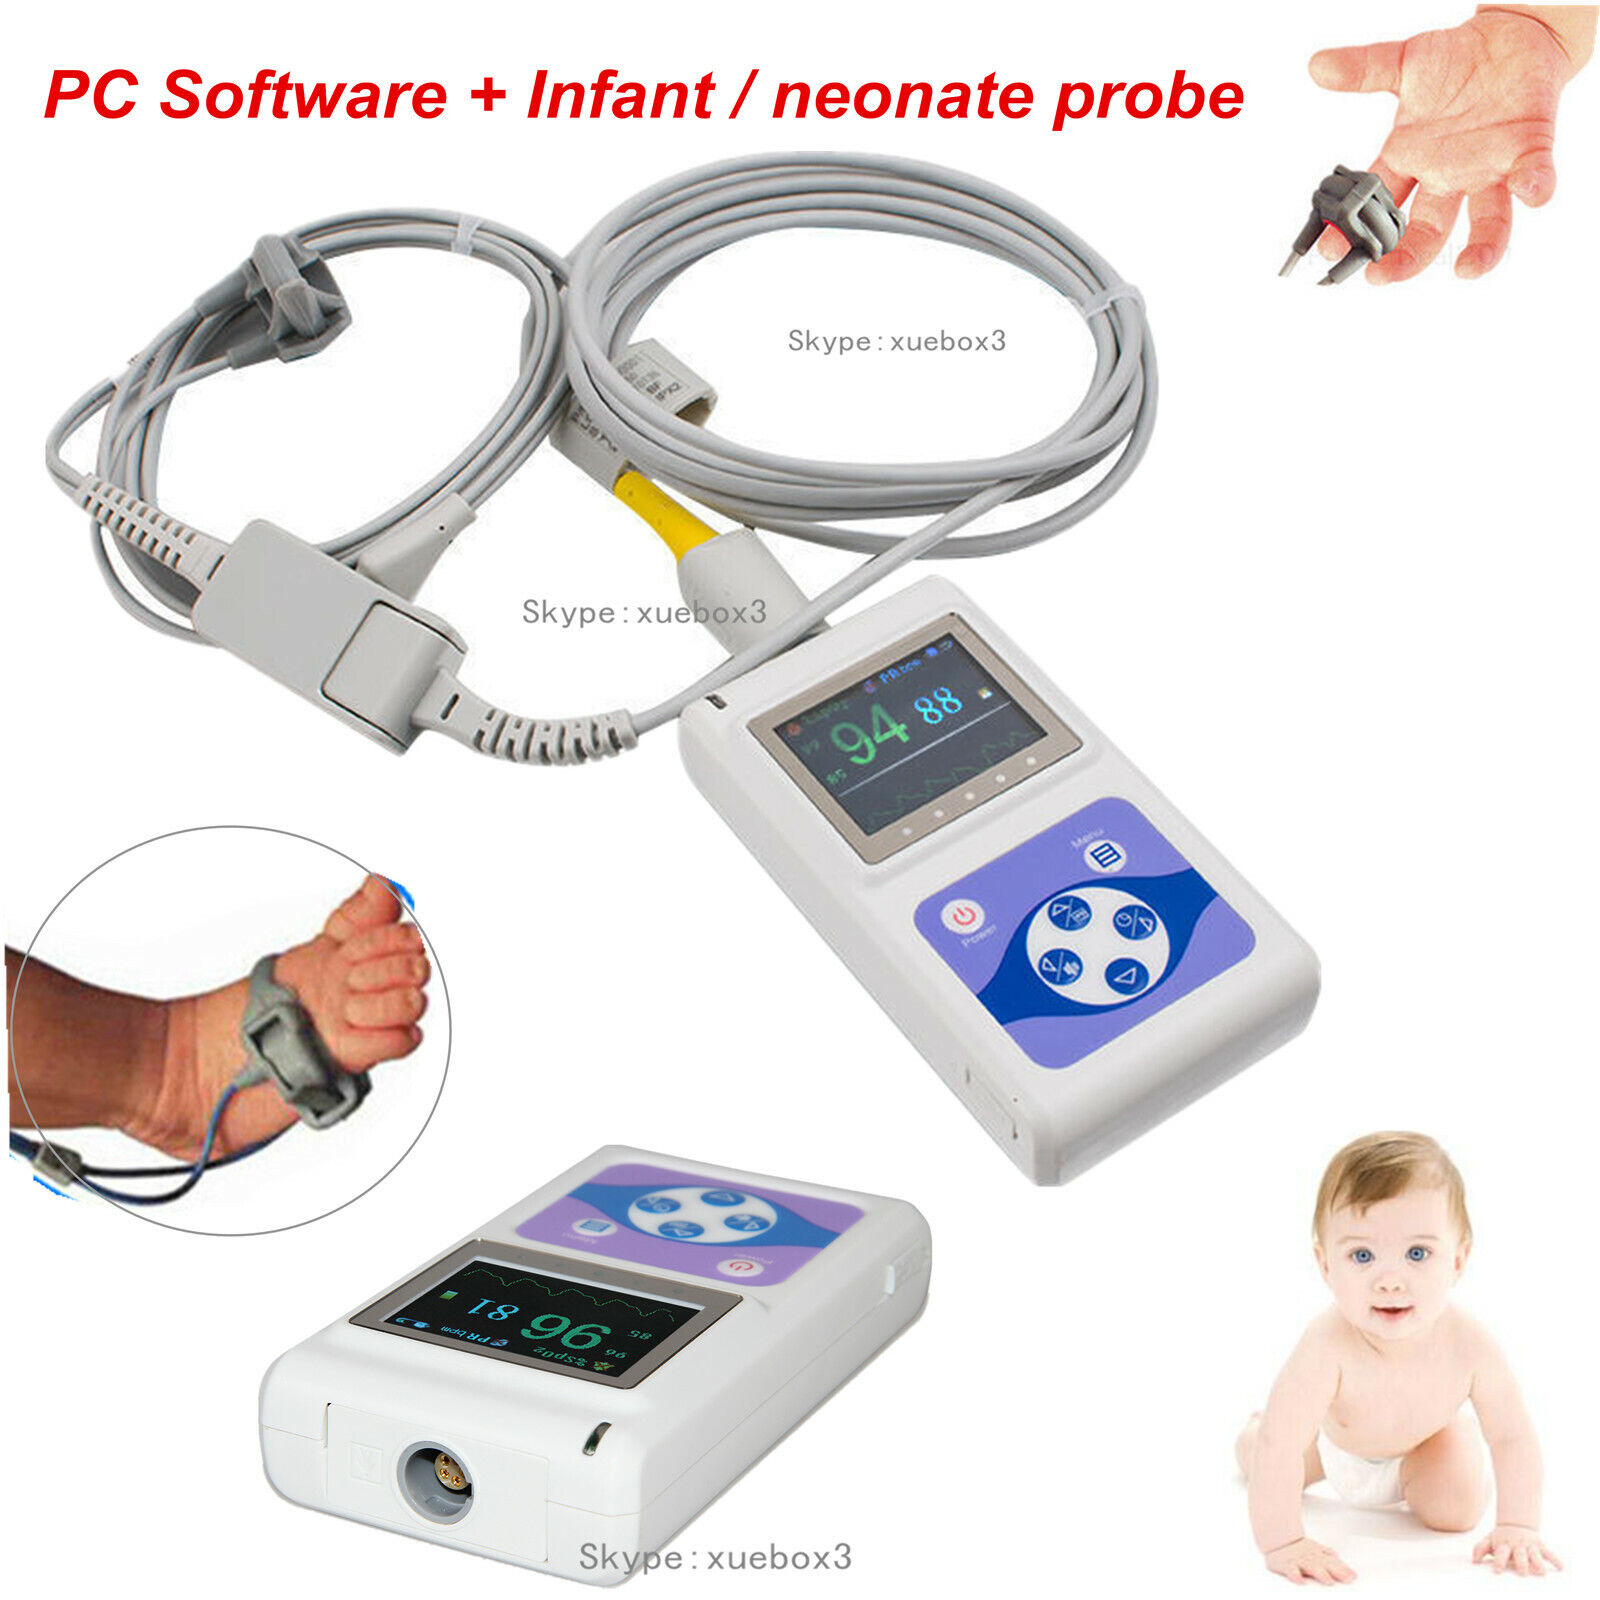 New Neonatal Infant pediatric Kids Born Pulse Oximeter Spo2 Monitor+PC software